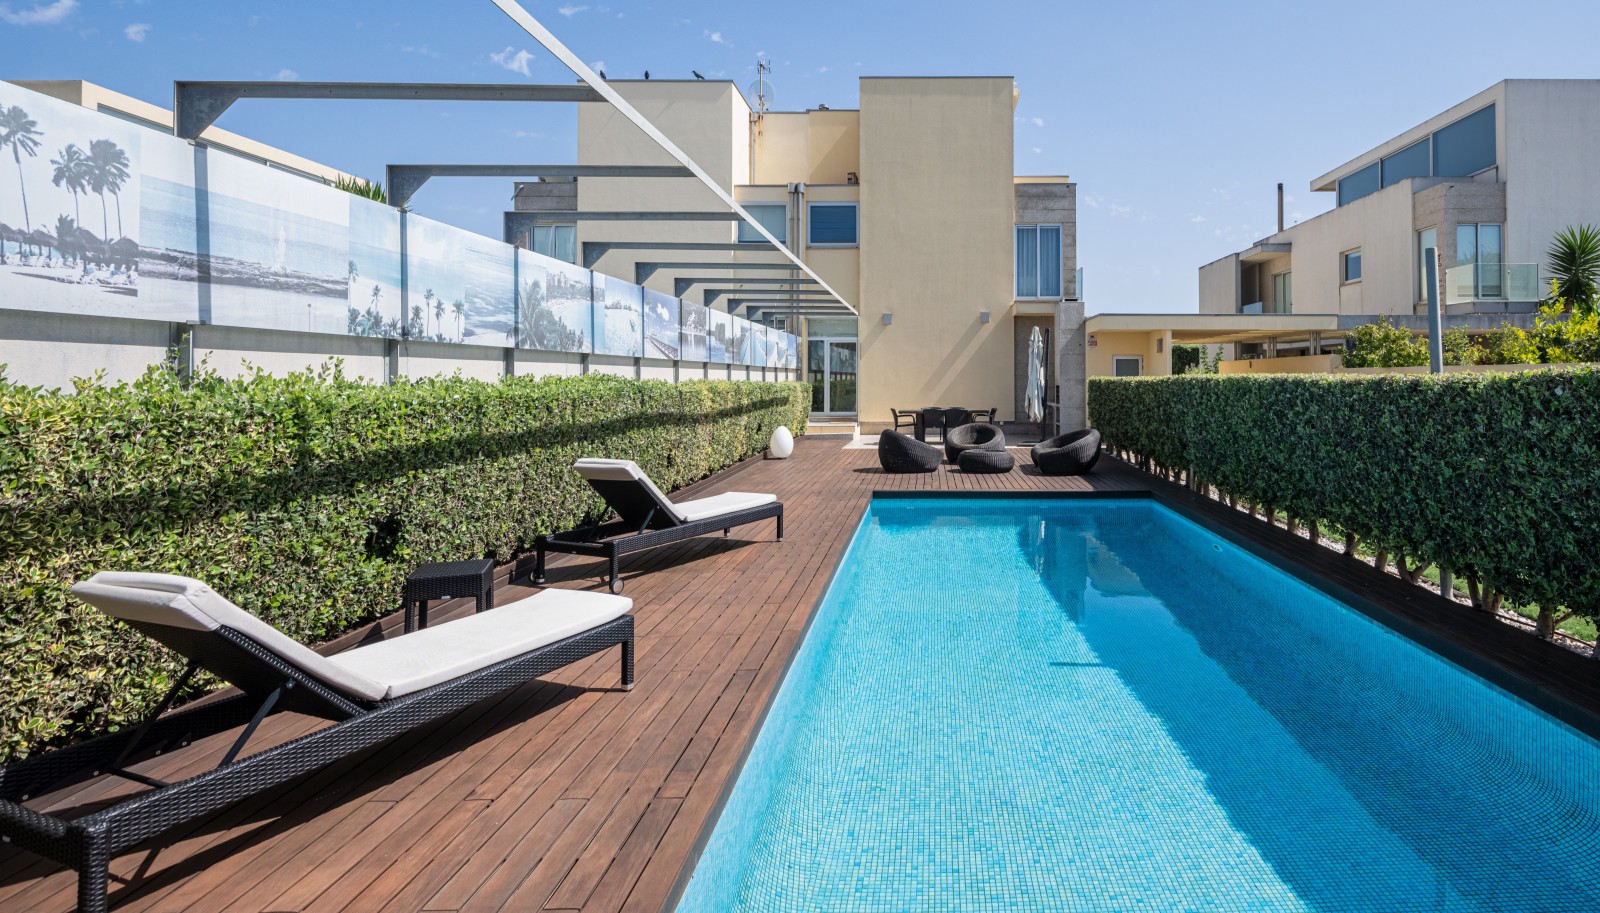 Villa mit Pool und Garten, zu verkaufen, in Miramar, V. N. Gaia, Portugal_235375